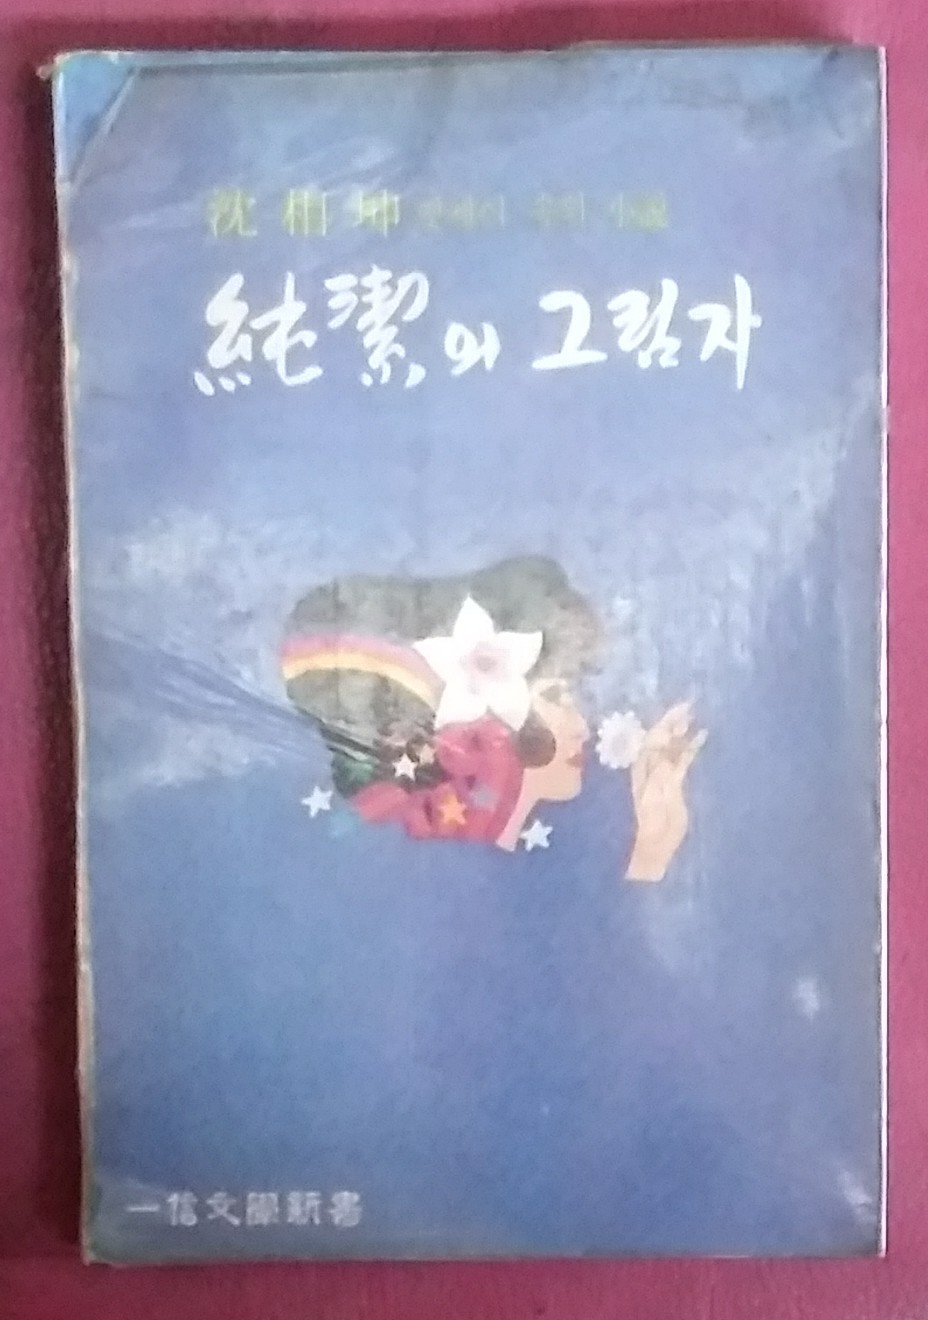 순결의 그림자 - 심상곤 엣세이 속의 소설 1977년초판본